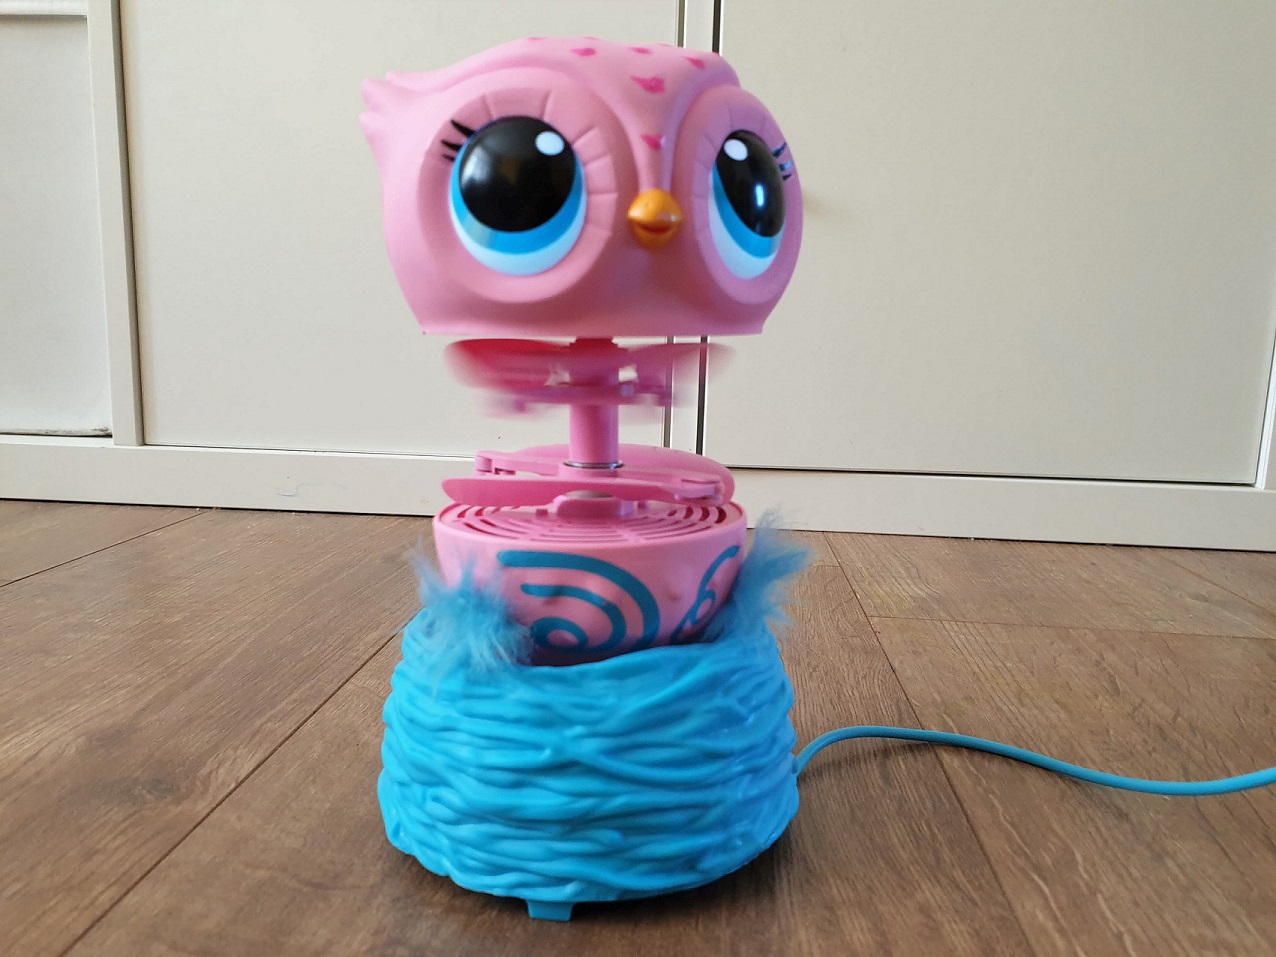 Owleez interactive flying owl toy